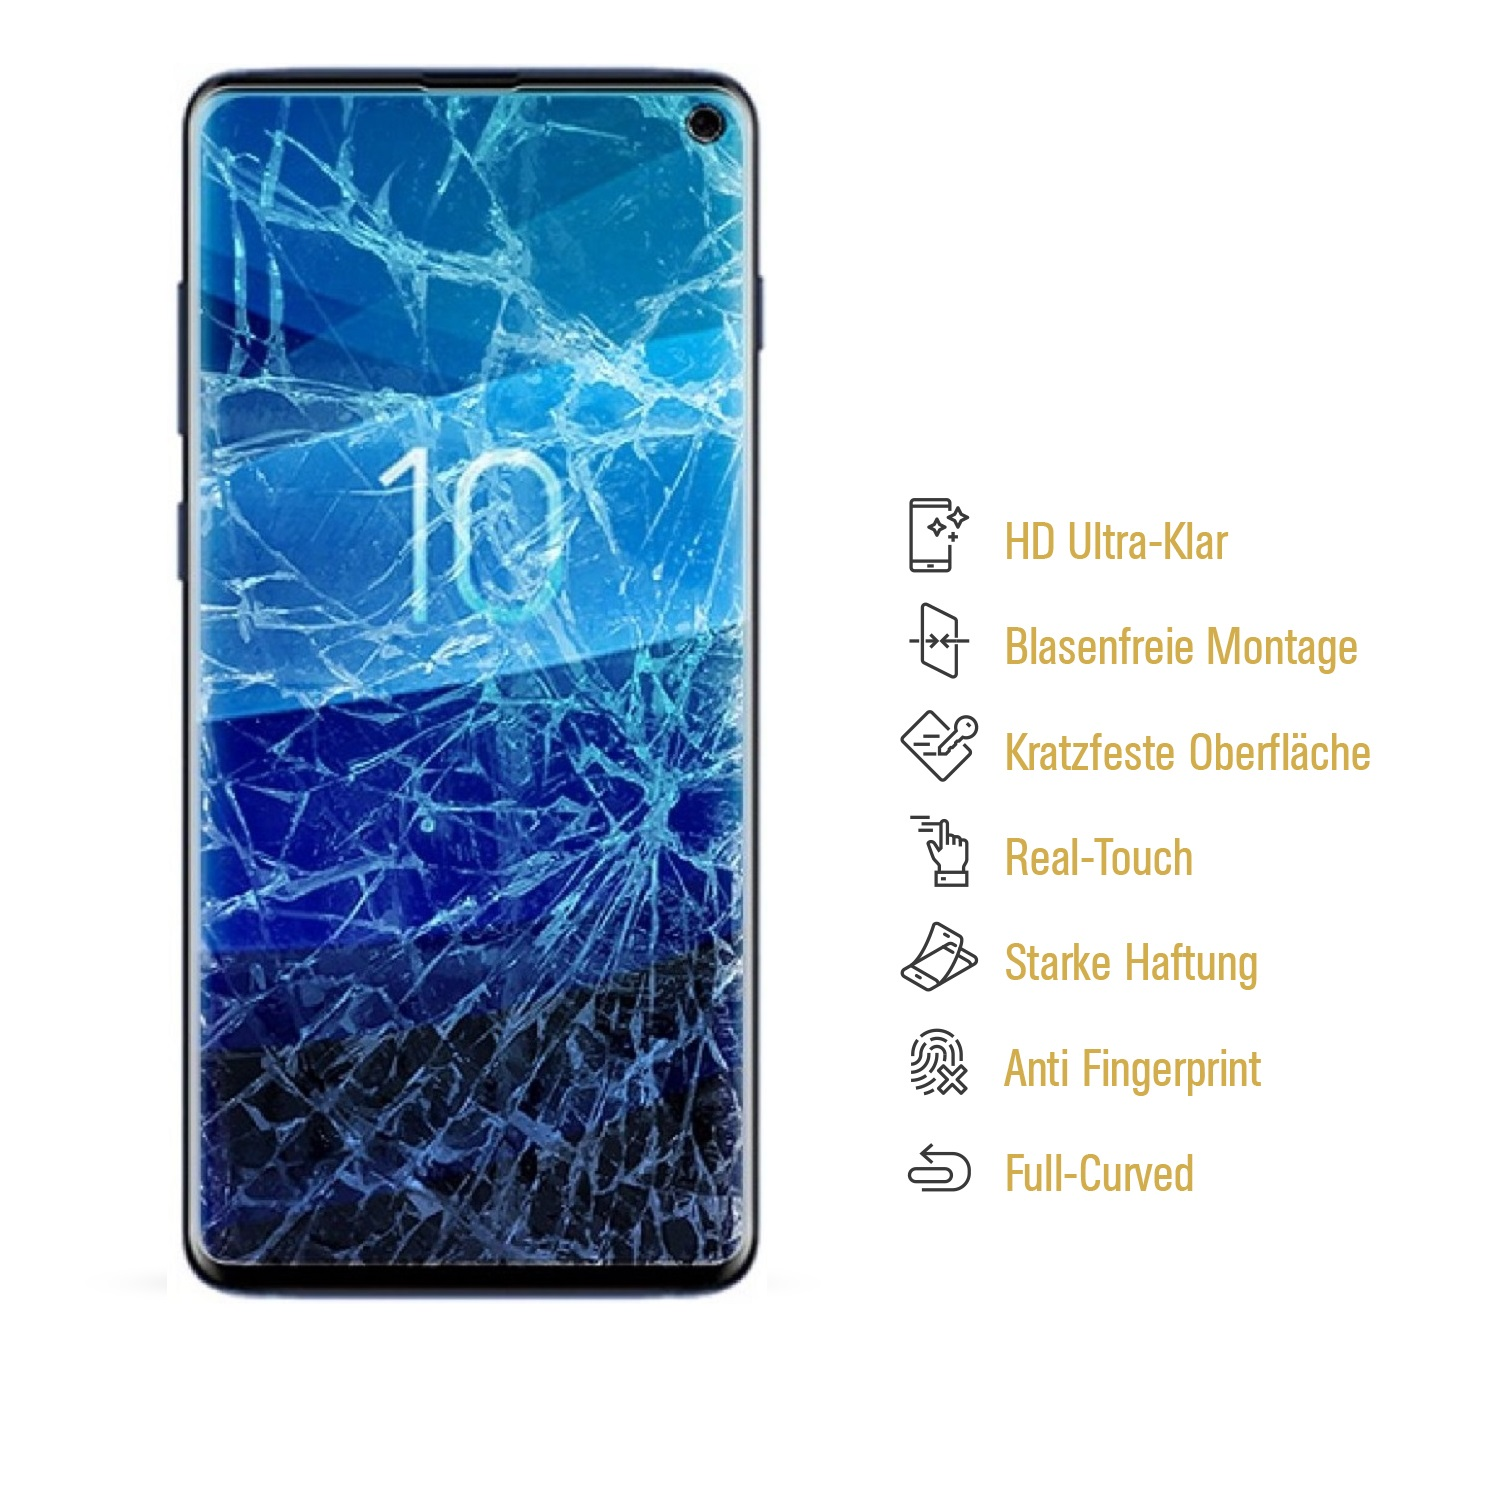 PROTECTORKING 4x Flexibles Nano-Glas ENTSPIEGELT Displayschutzfolie(für MATT Samsung Galaxy S10e)